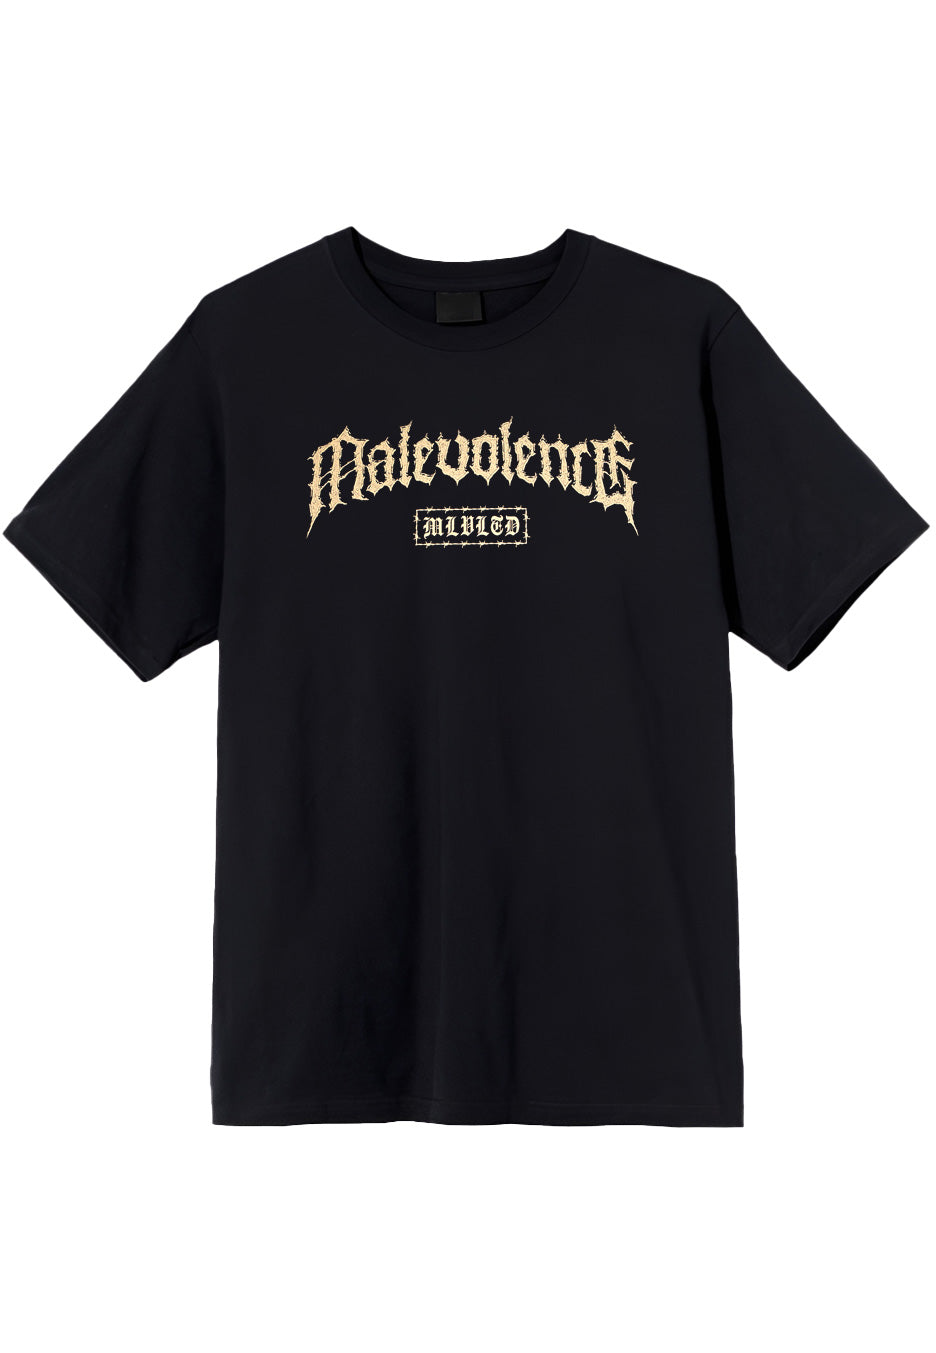 Malevolence - Malicious Intend - T-Shirt